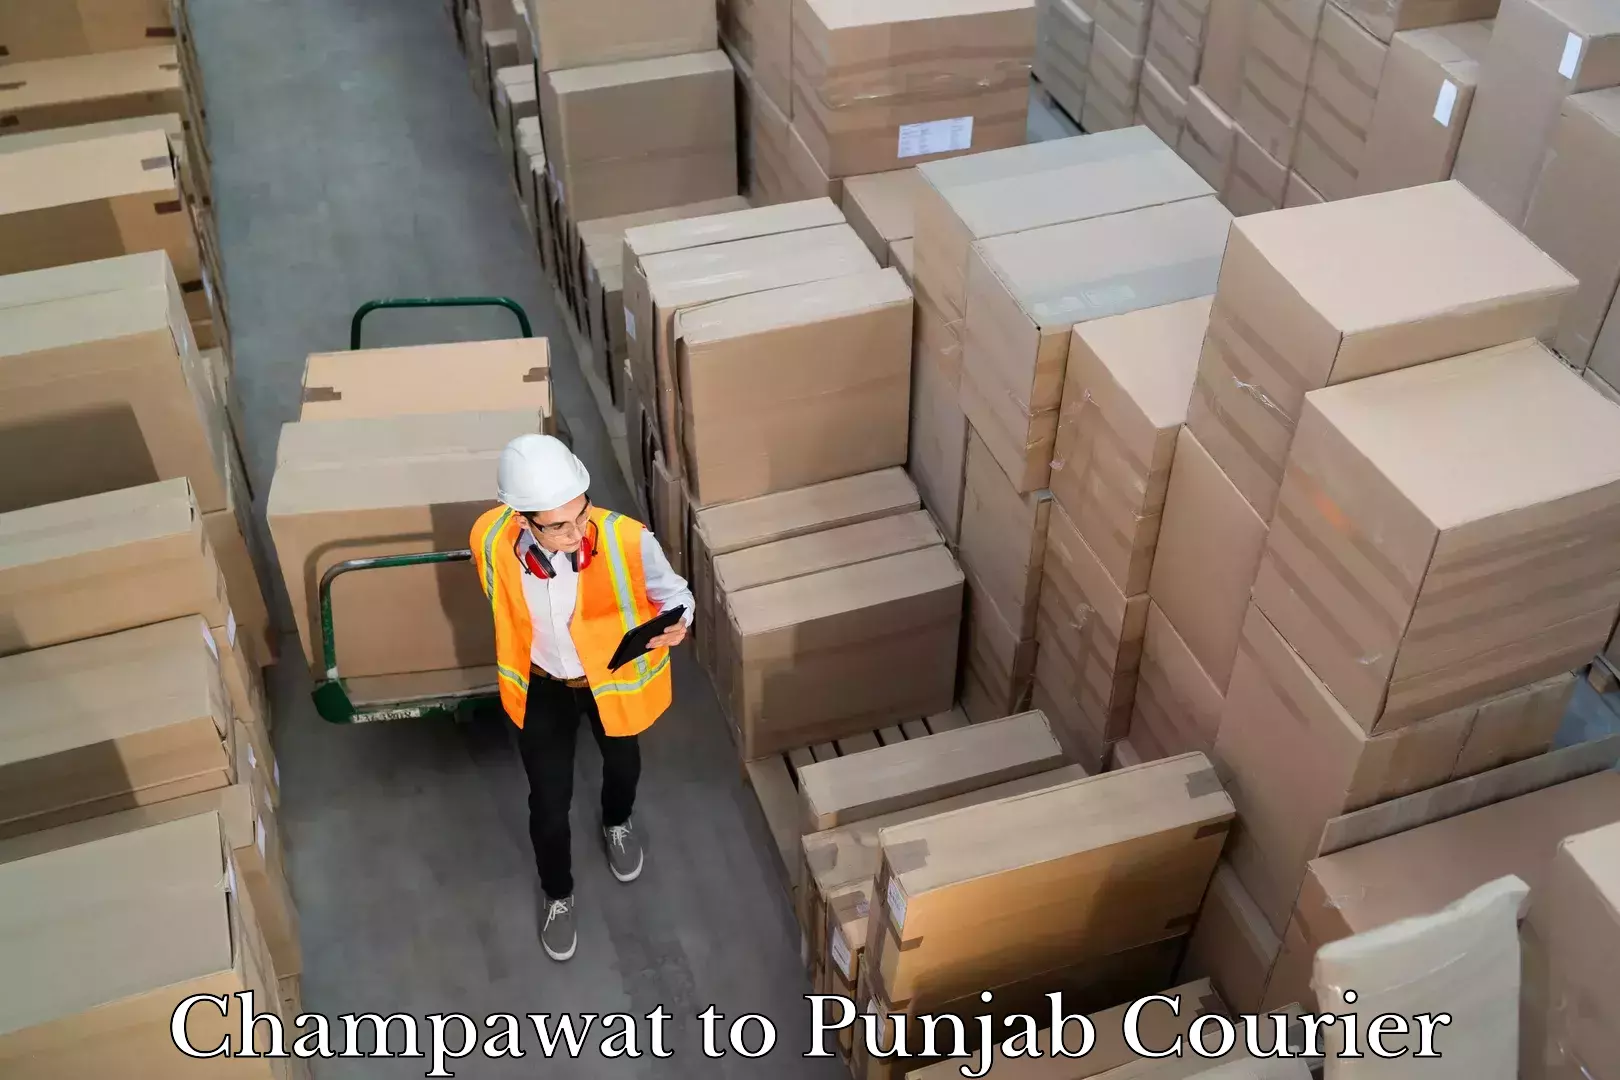 On-demand shipping options Champawat to Punjab